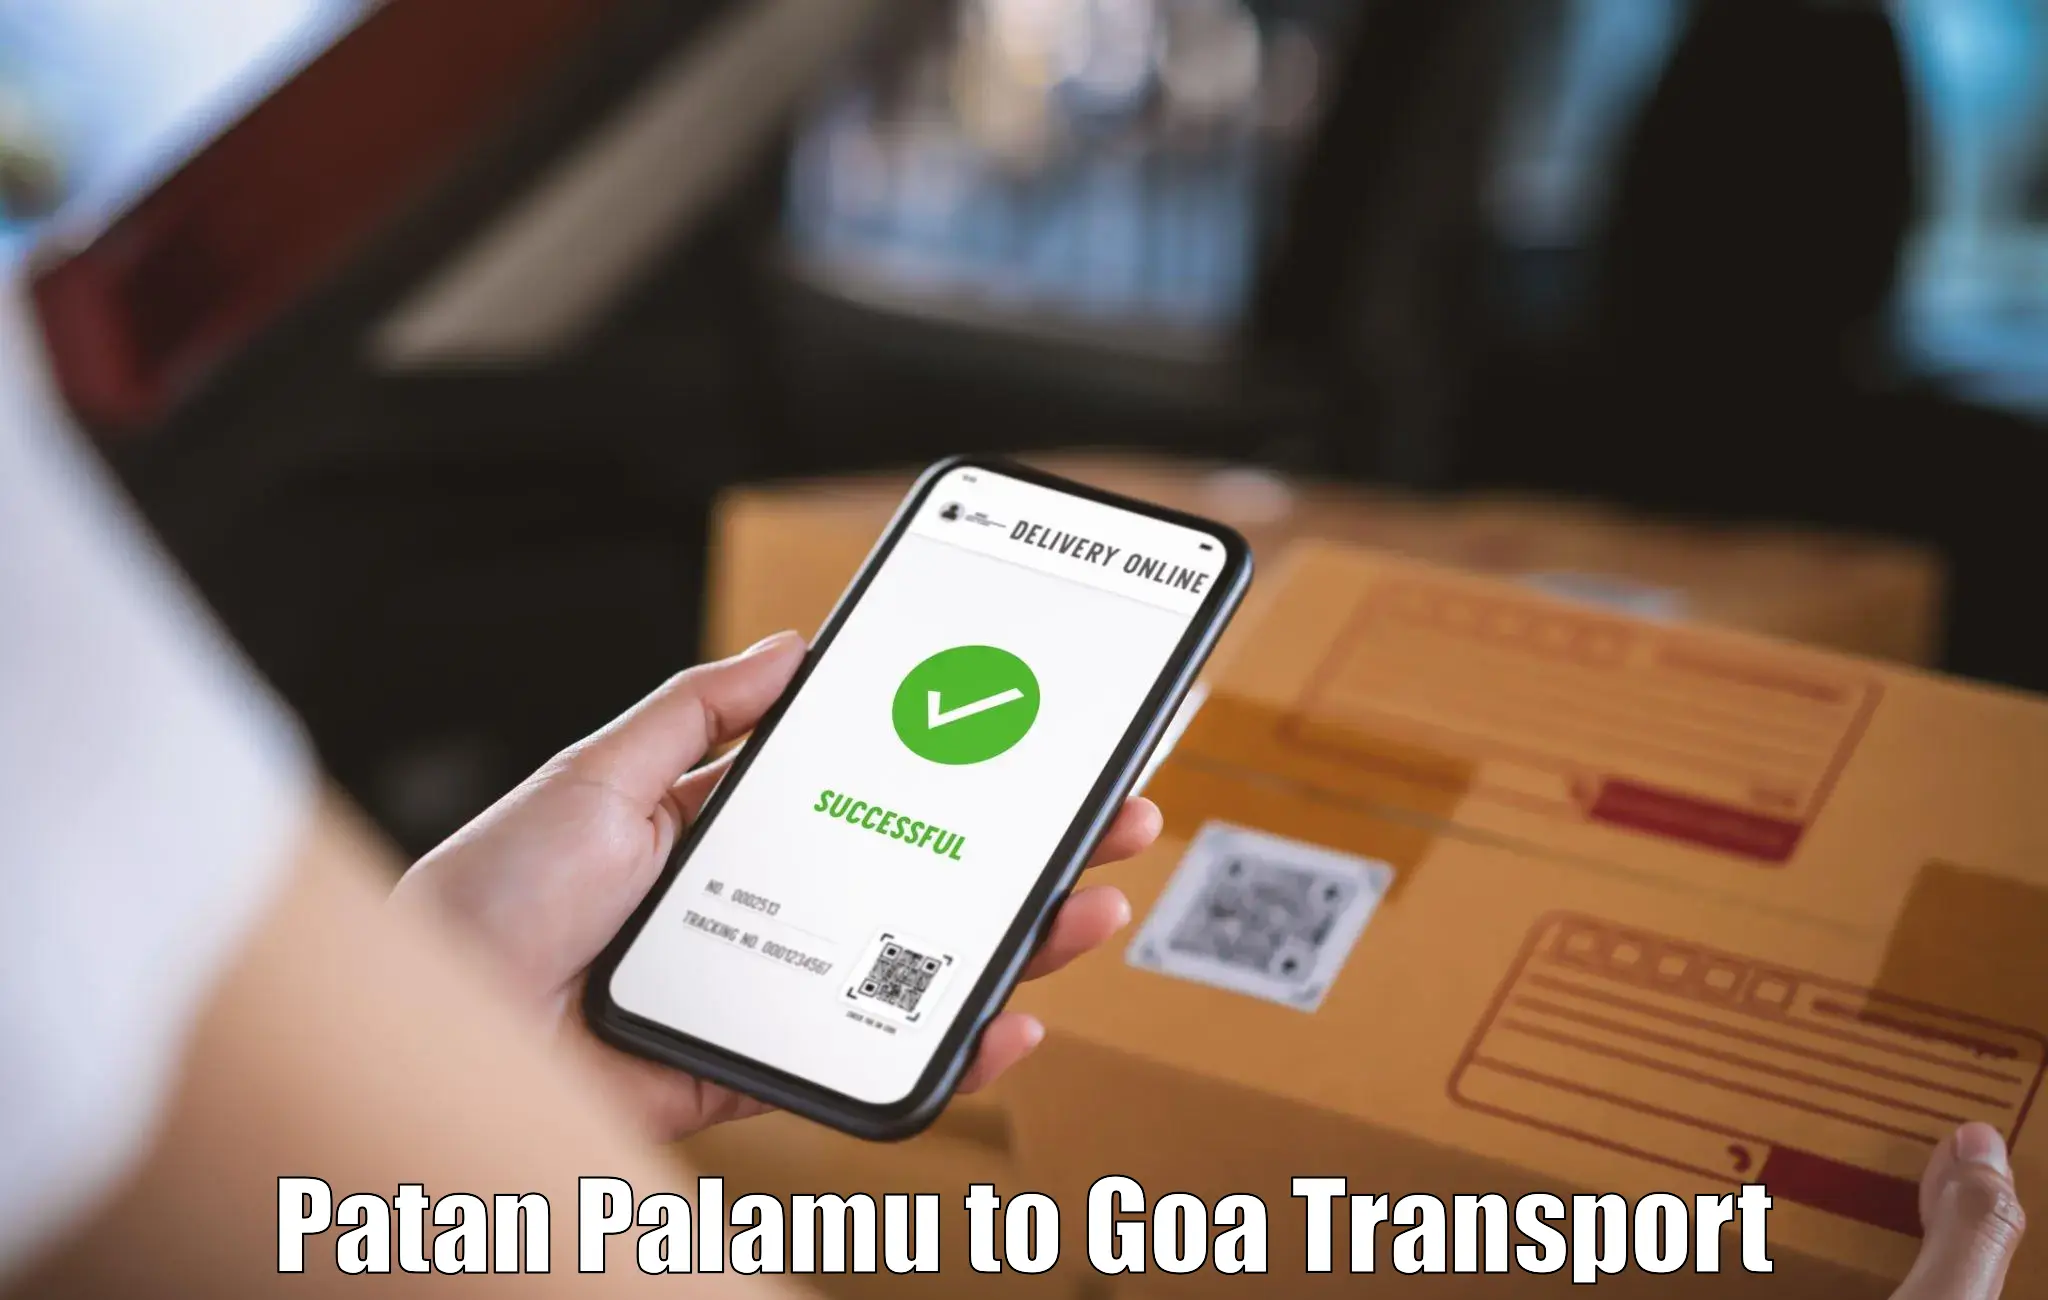 Daily transport service Patan Palamu to Bardez